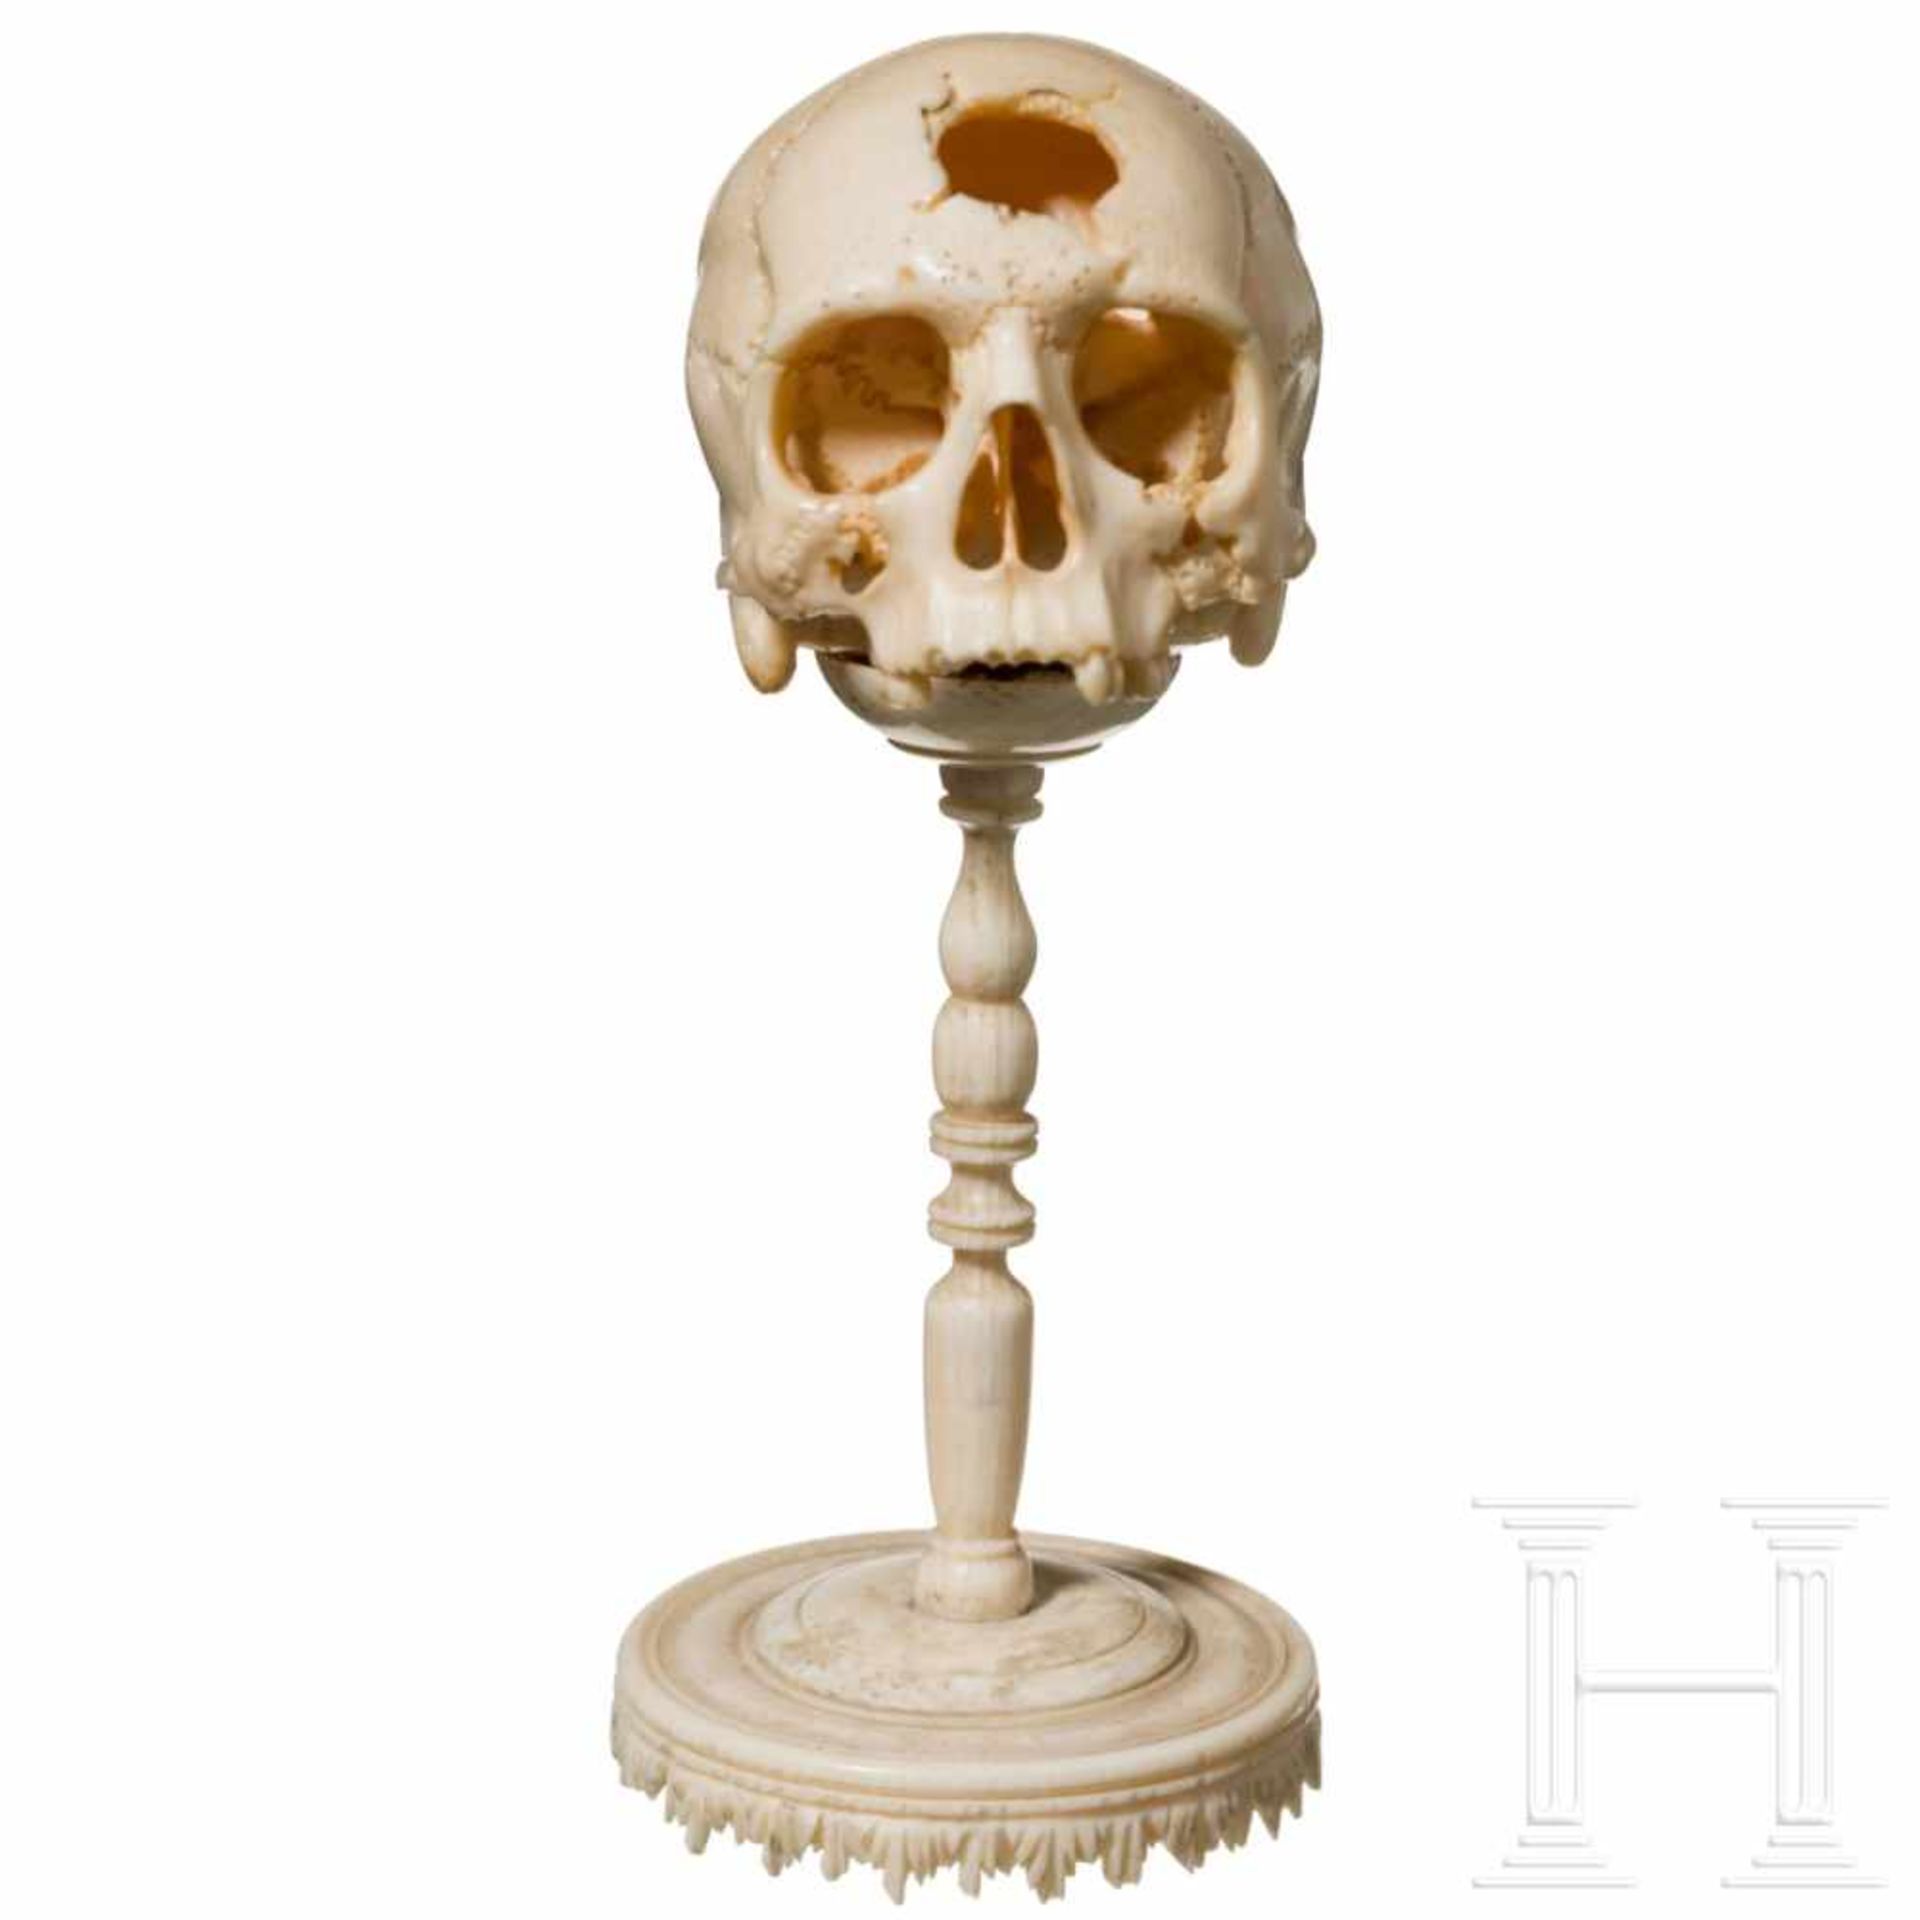 A German memento mori skull, 17th centuryFein geschnitzter, anatomisch korrekter menschlicher - Bild 2 aus 4